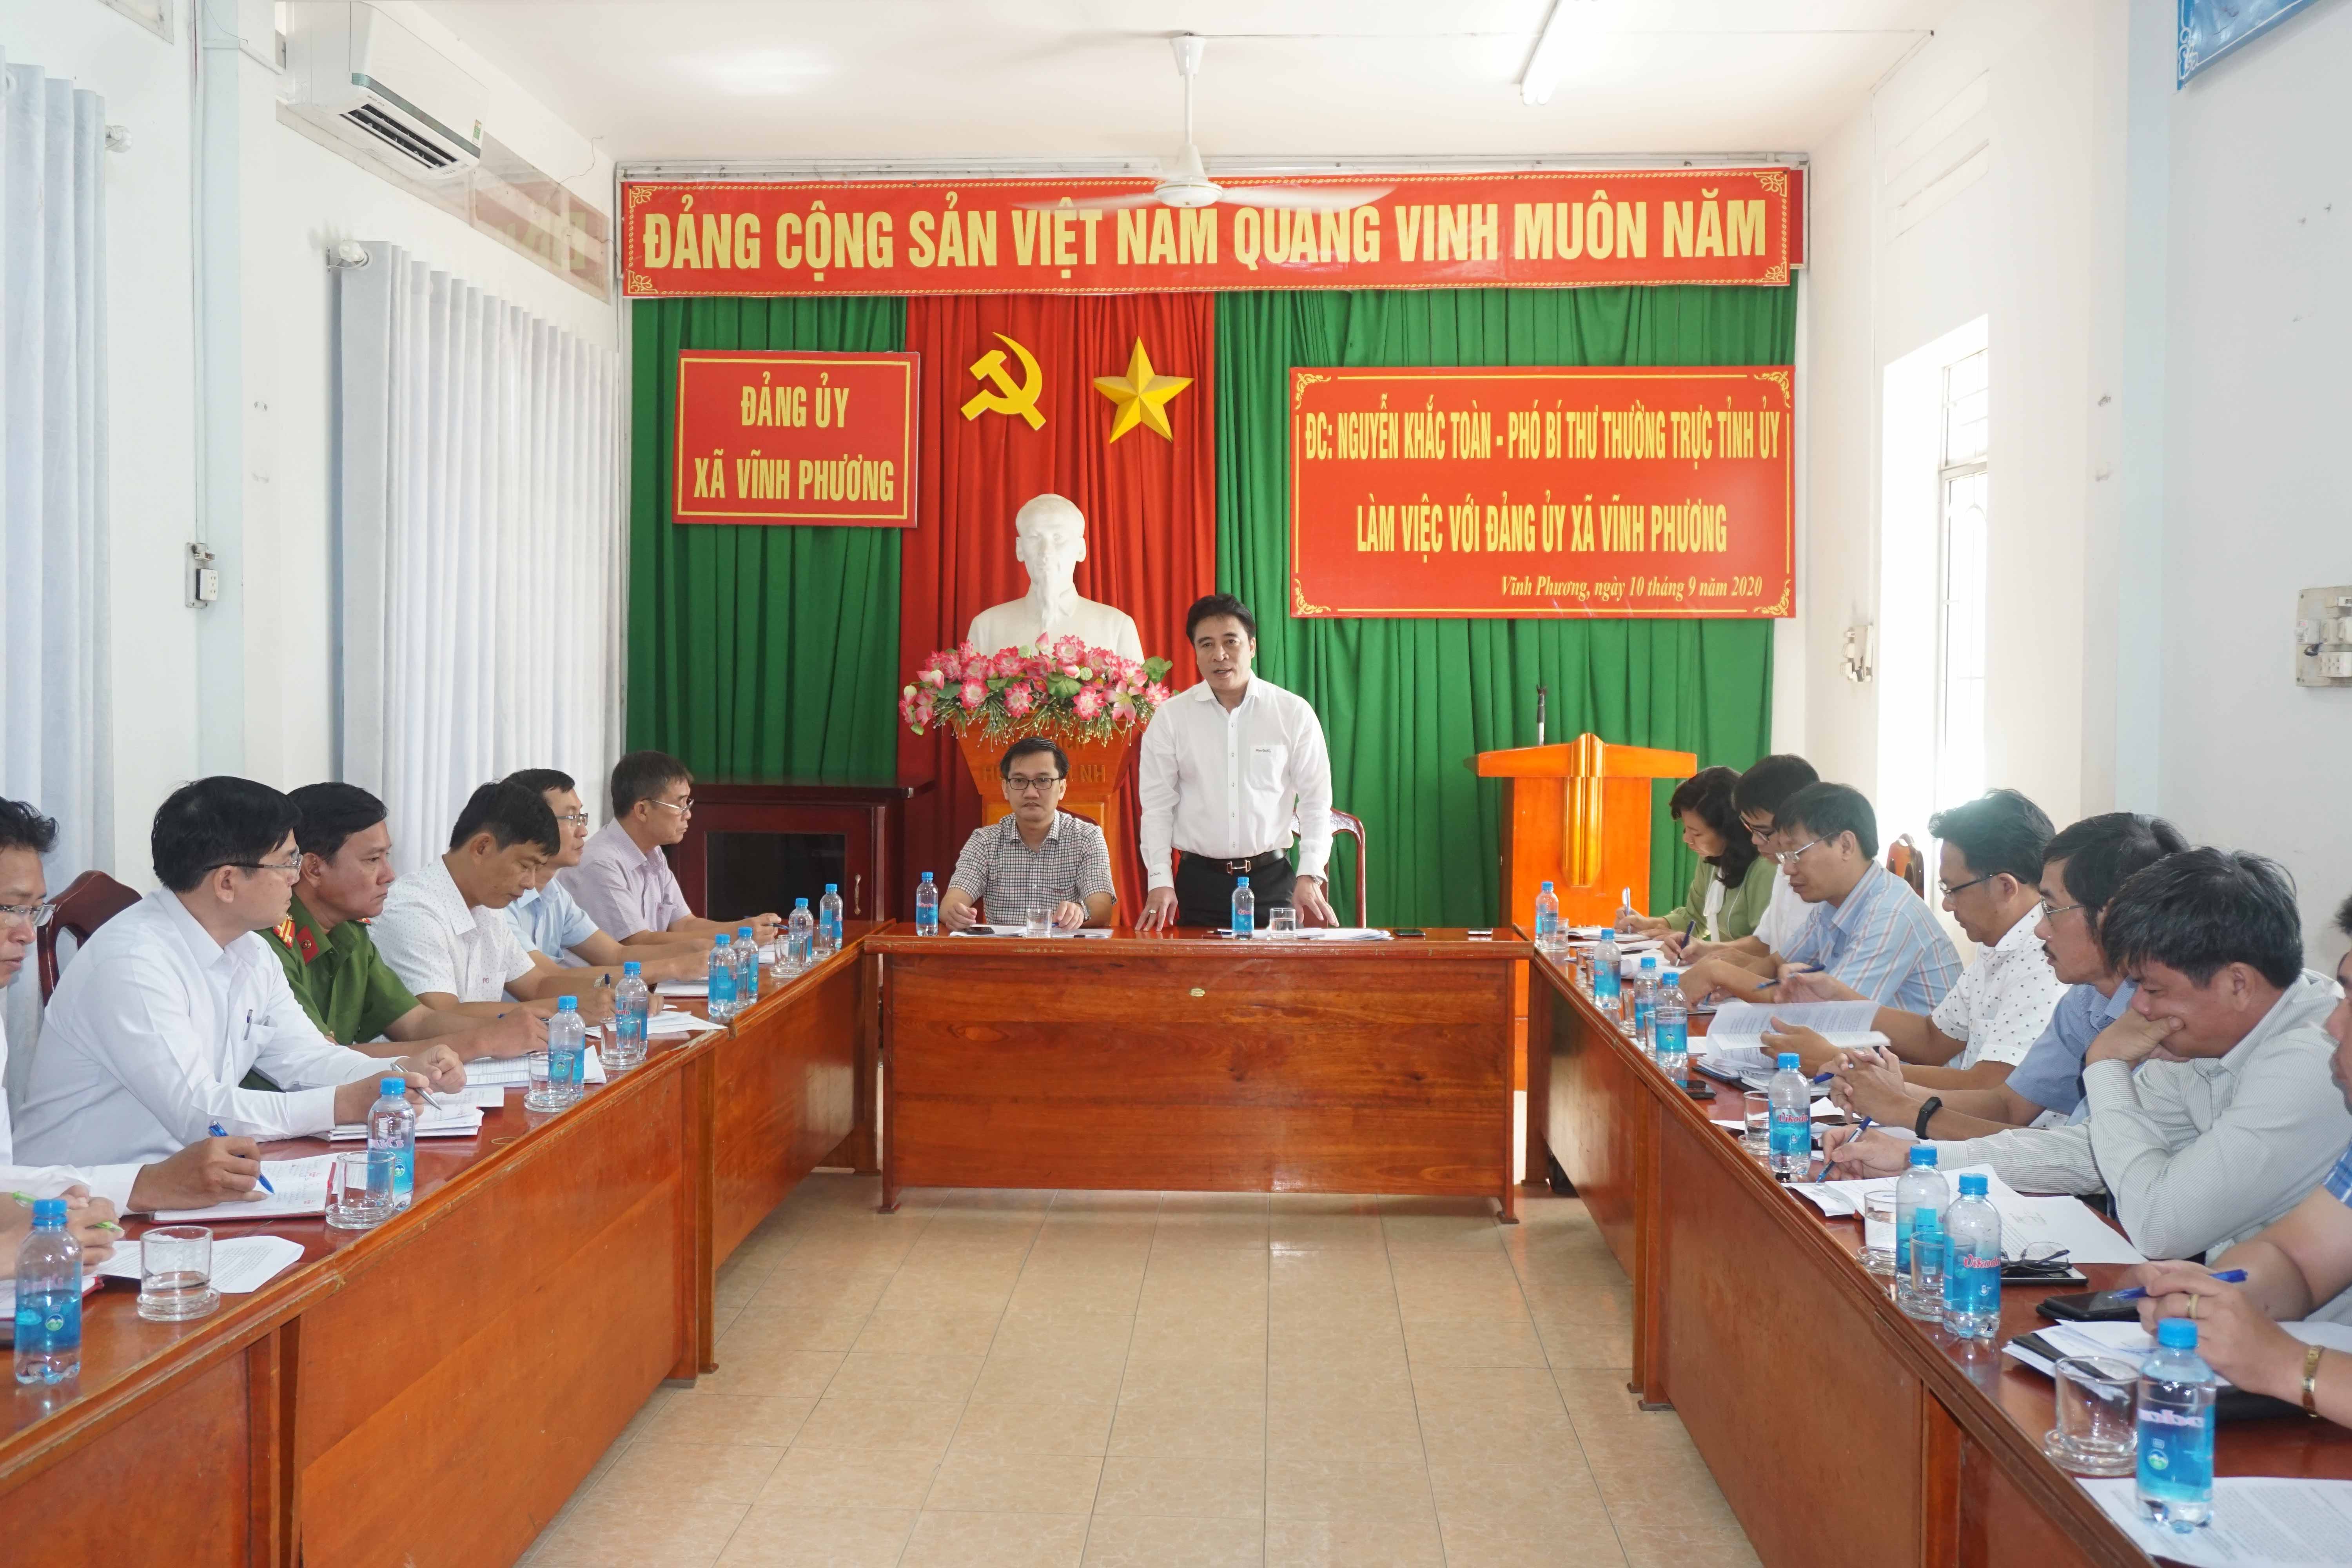 Đồng chí Phó Bí thư Thường trực Tỉnh ủy Nguyễn Khắc Toàn làm việc với Đảng ủy xã Vĩnh Phương và Vĩnh Trung